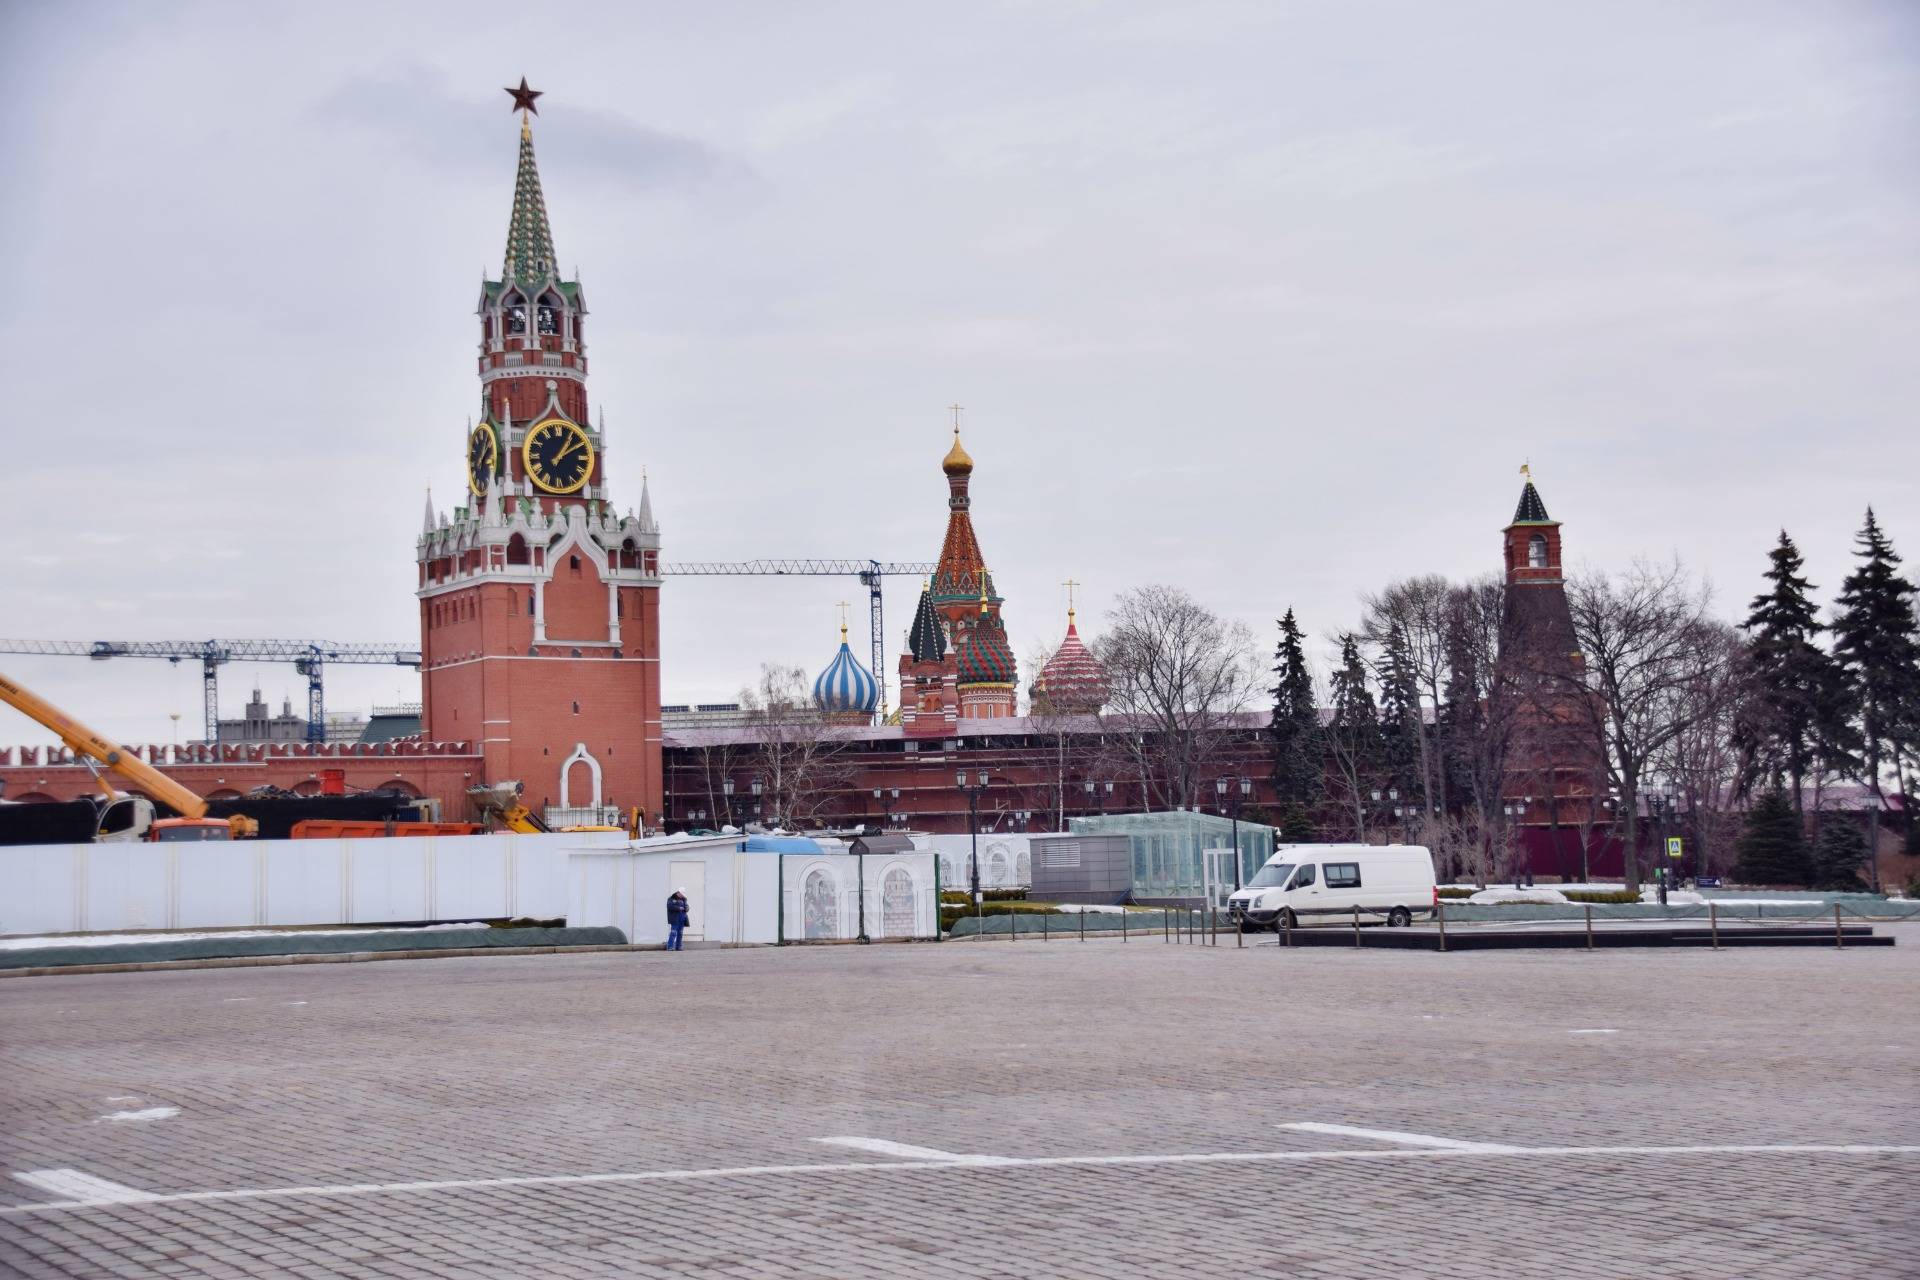 A Little Walk Through The Moscow Kremlin